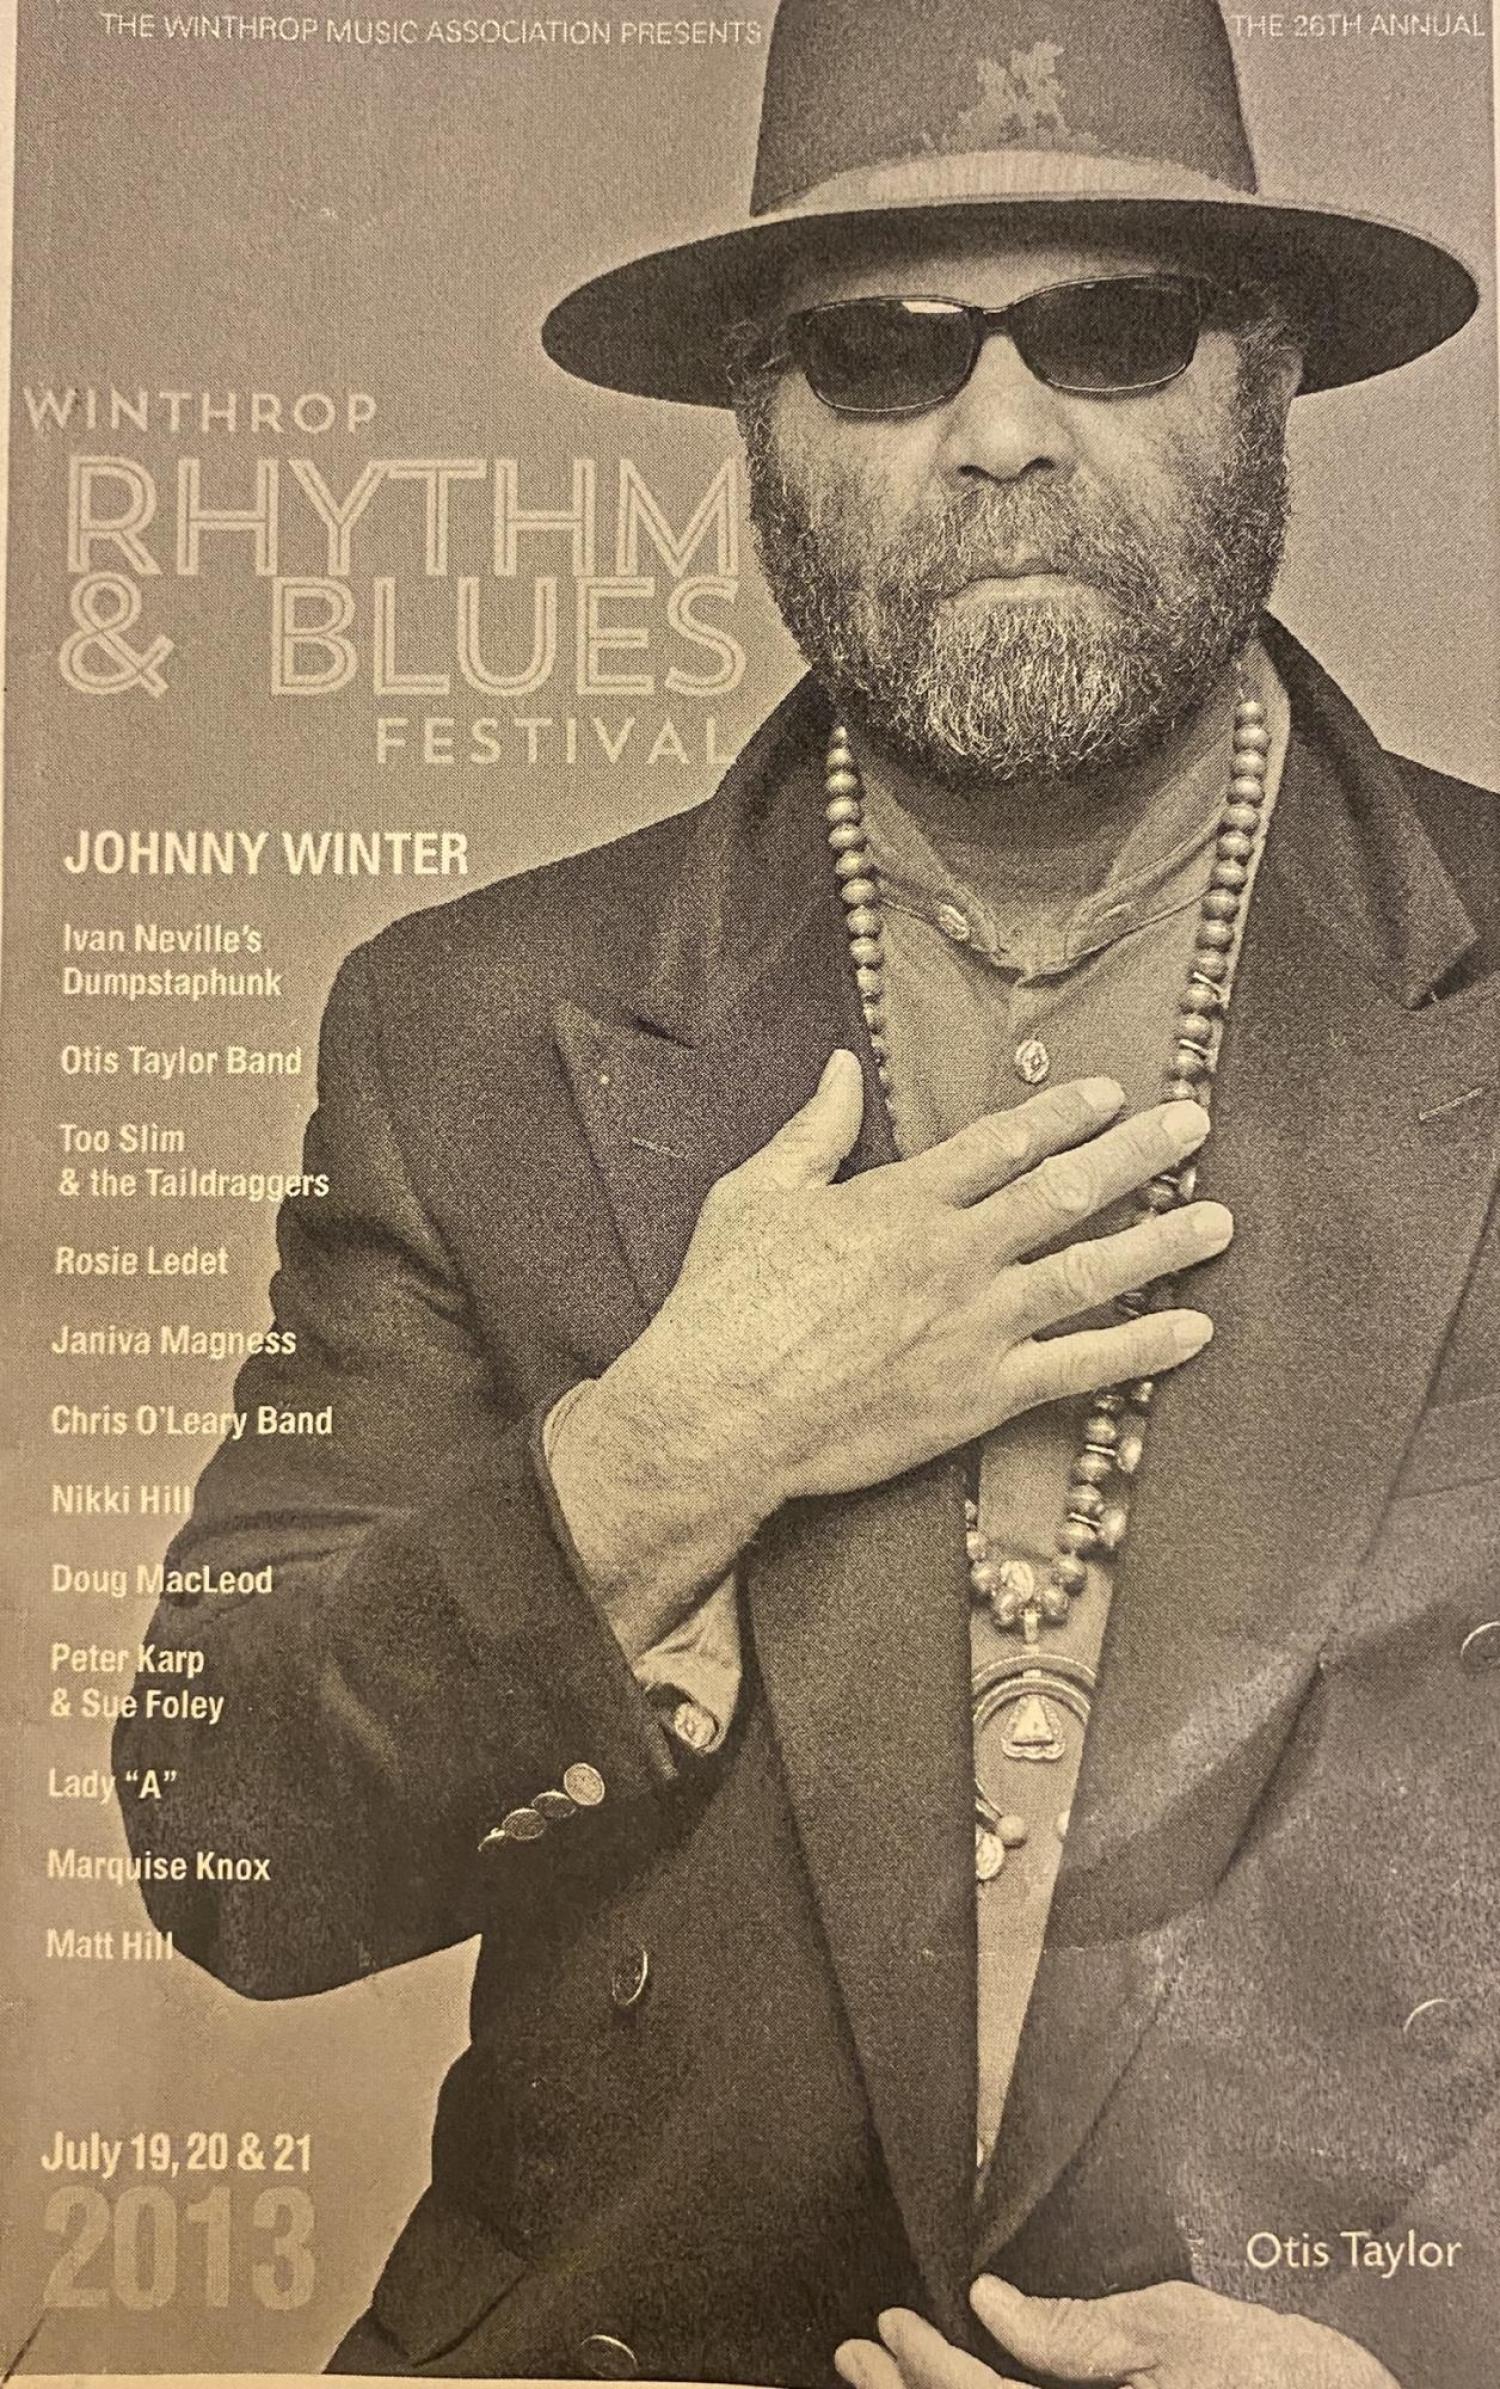 Winthrop Rhythm & Blues Festival featuring Otis Taylor Band